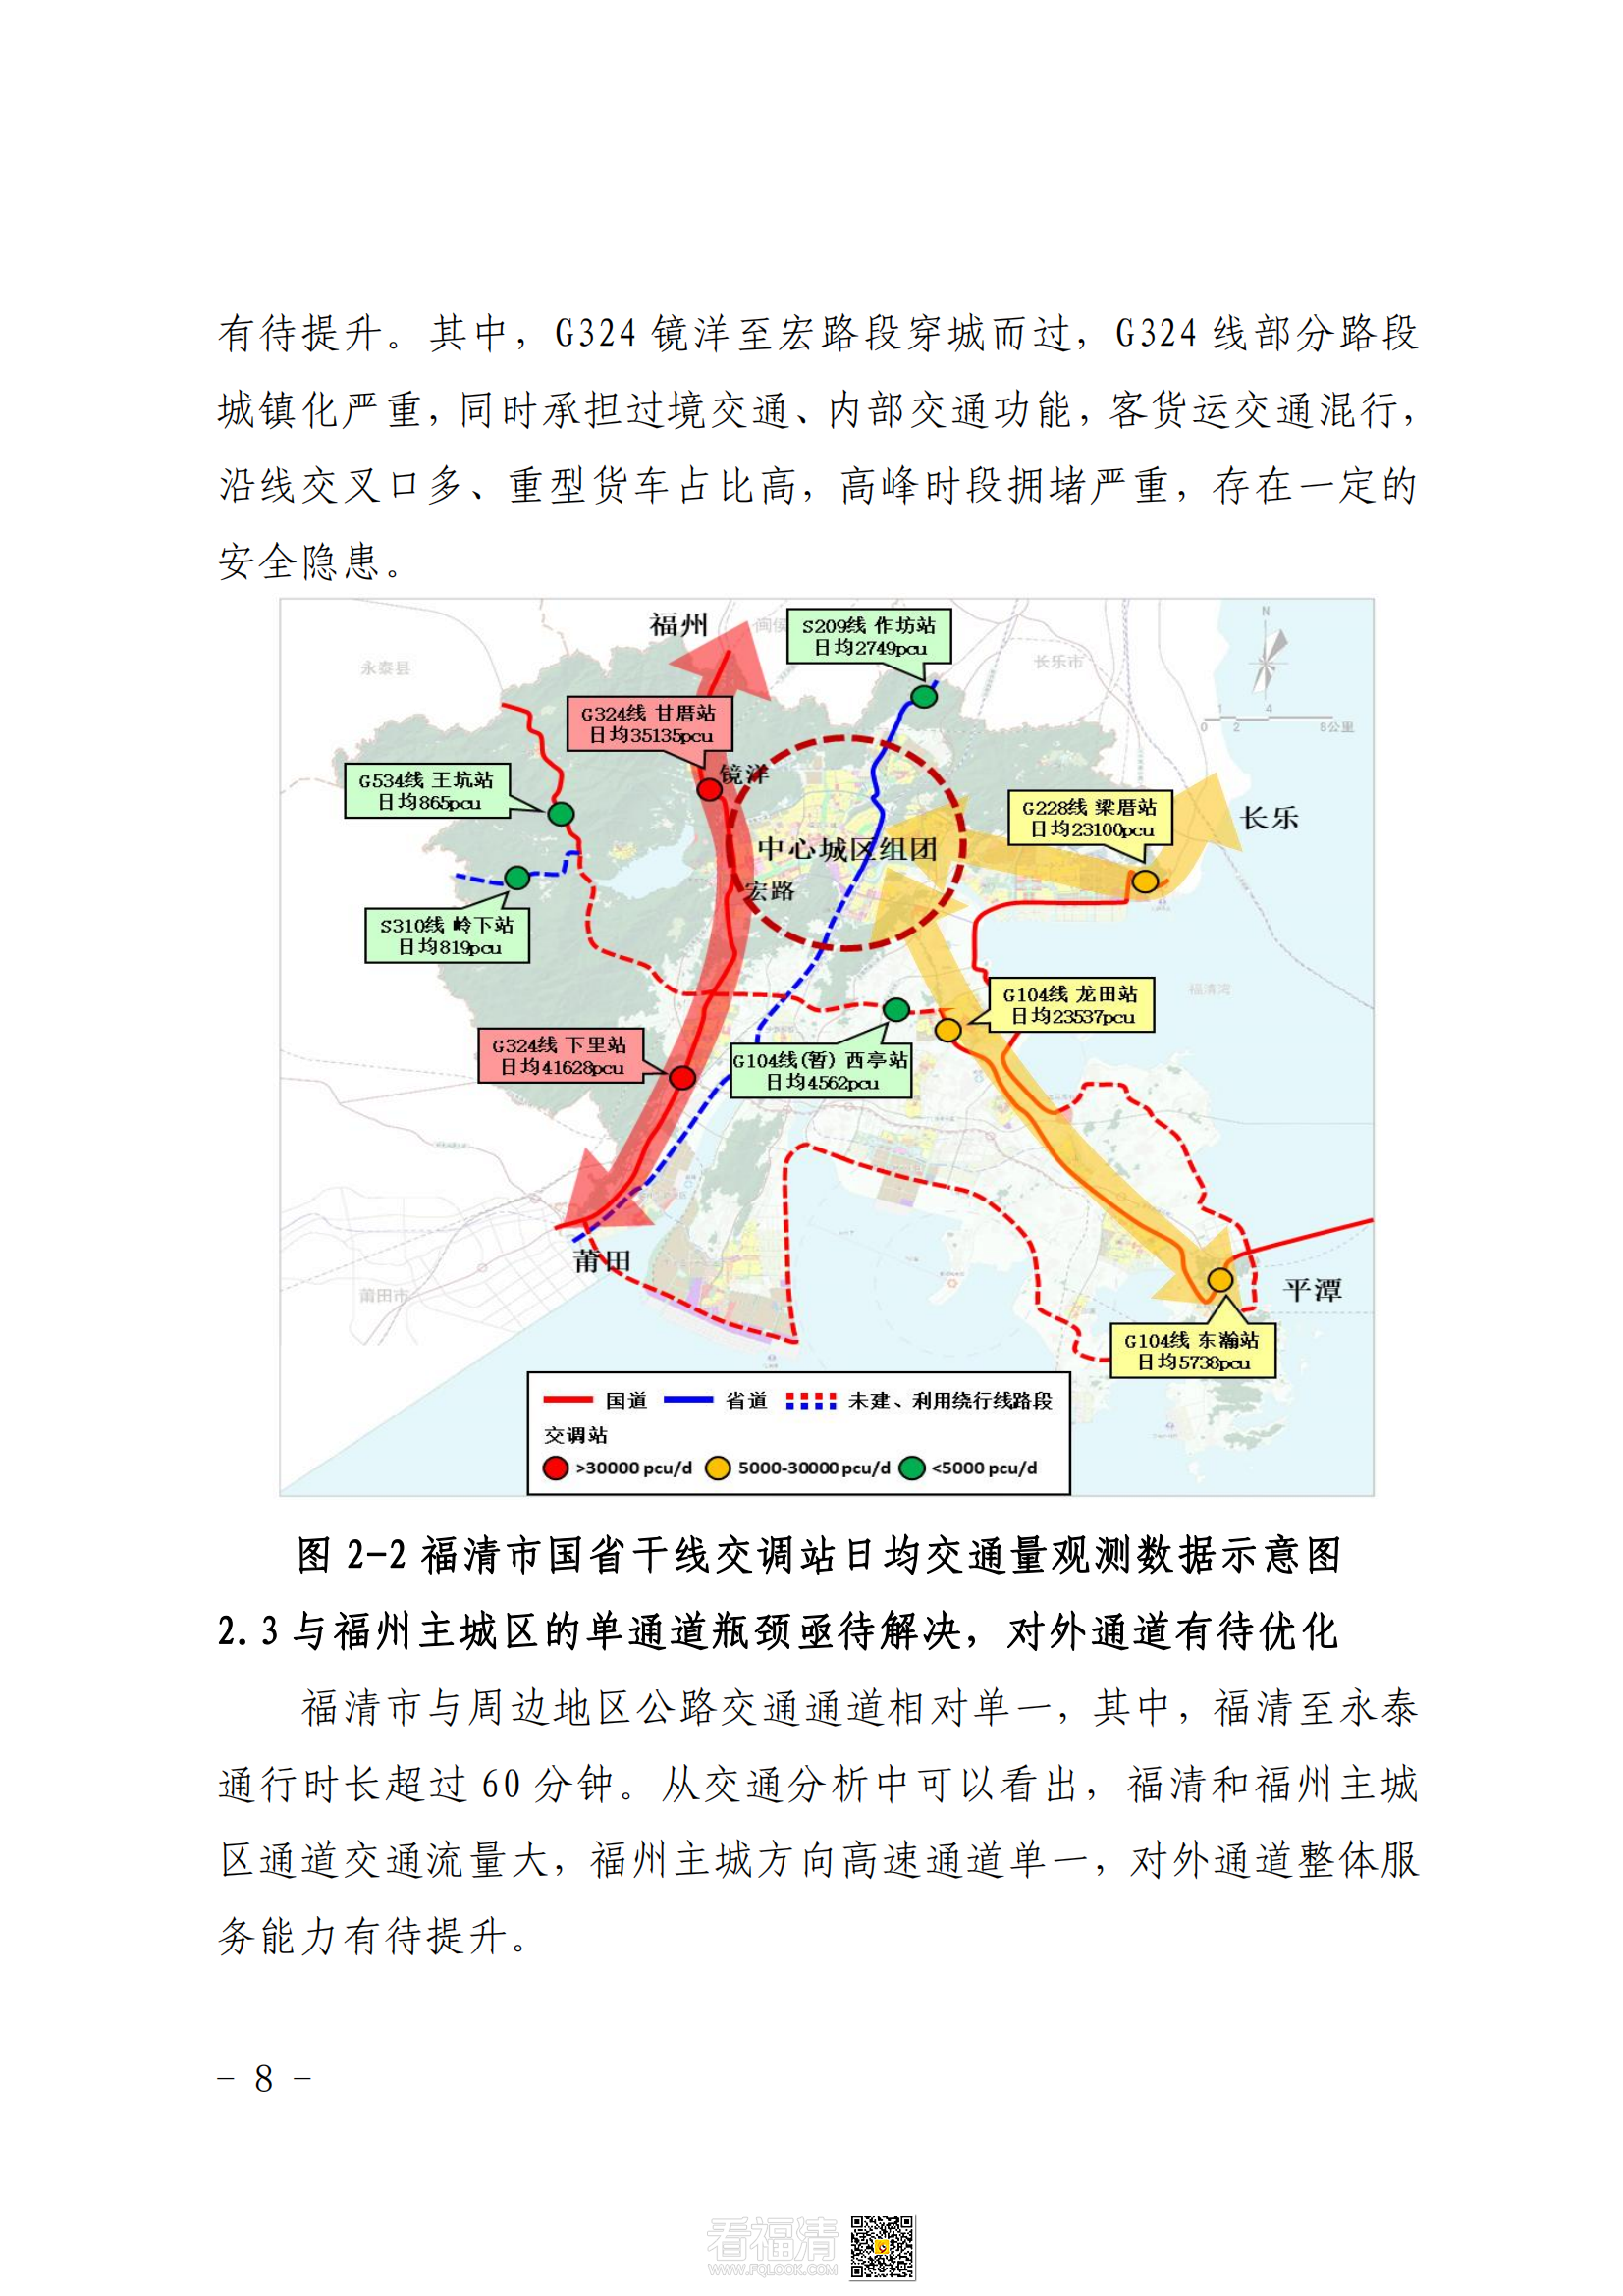 福清市公路干线路网规划（2021—2035）_11.png